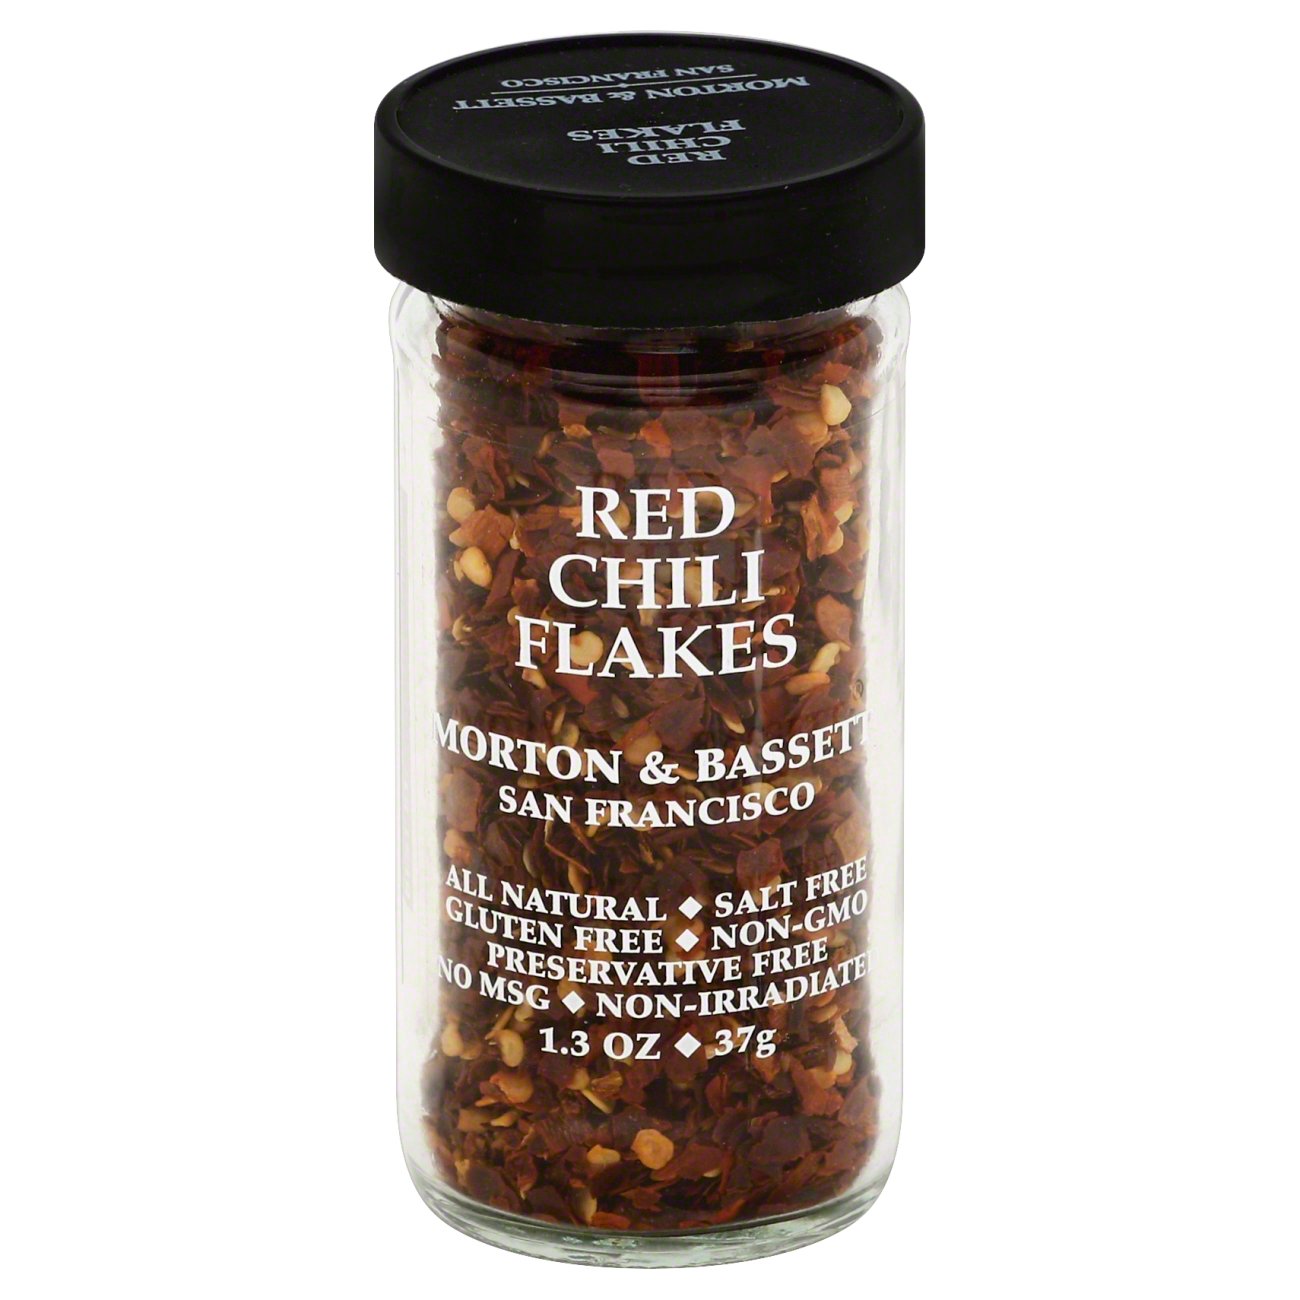 Morton & Bassett Red Chili Flakes